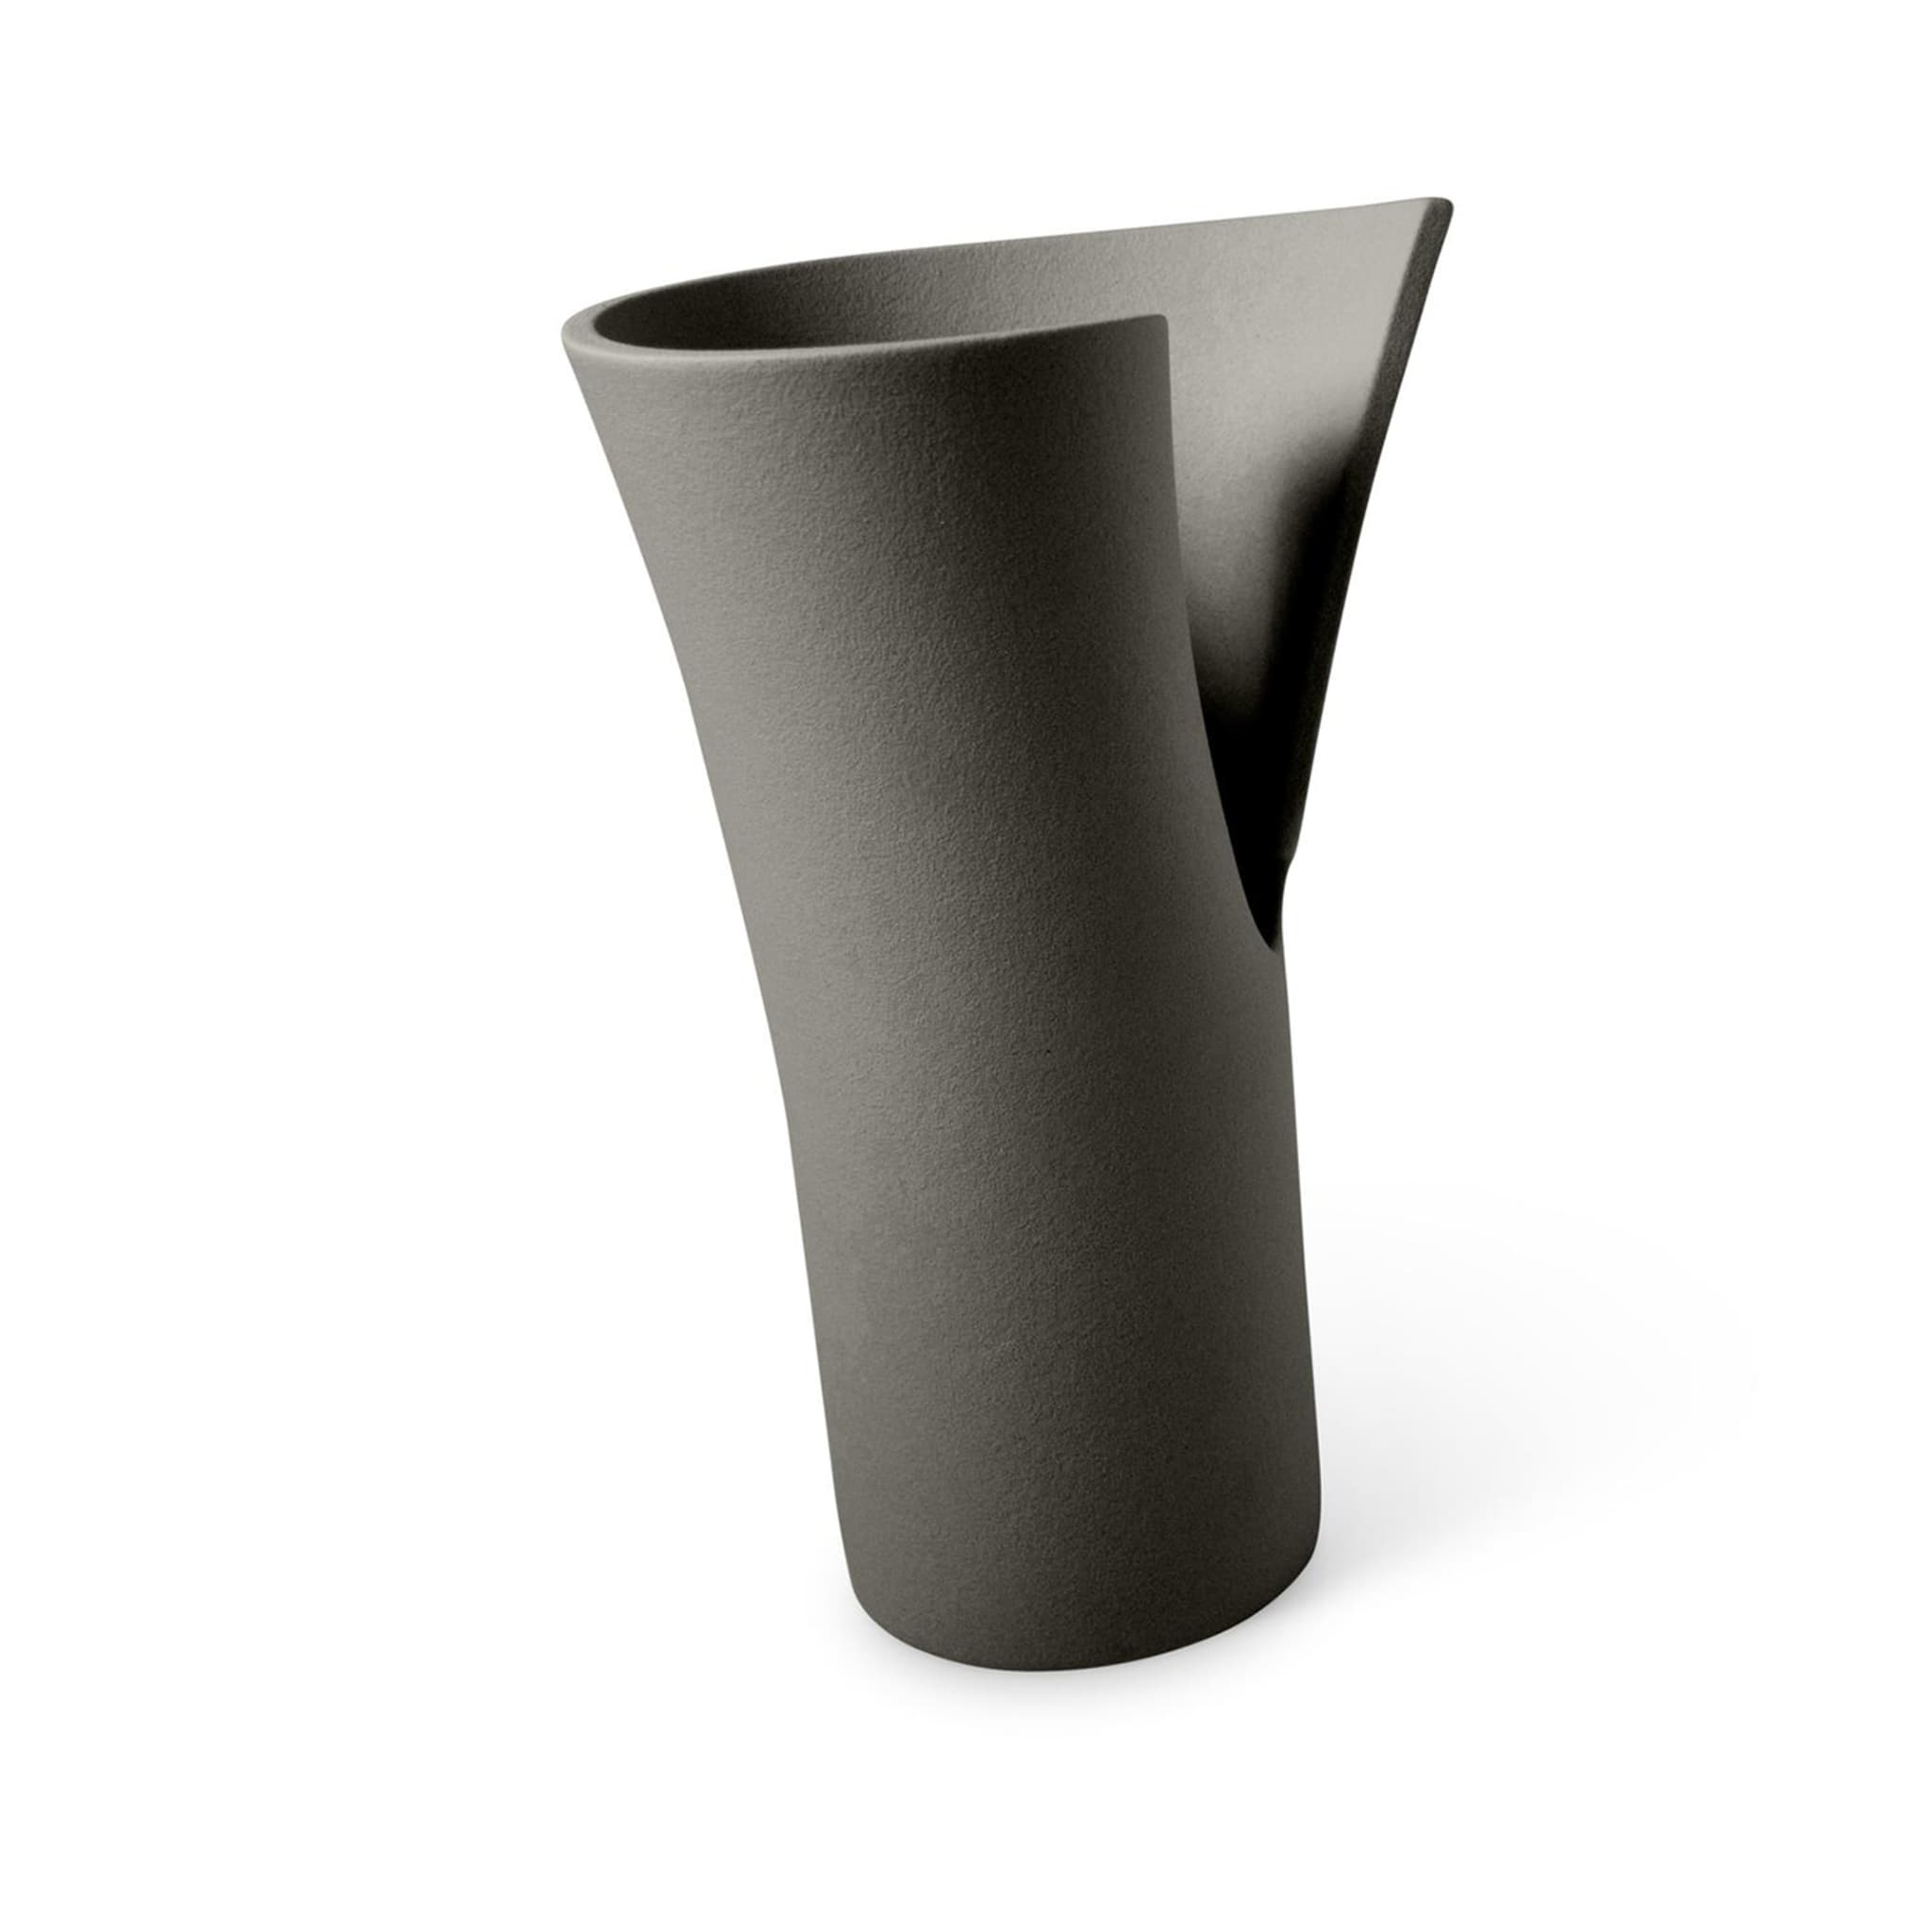 Helix Vase #2 - Alternative view 1